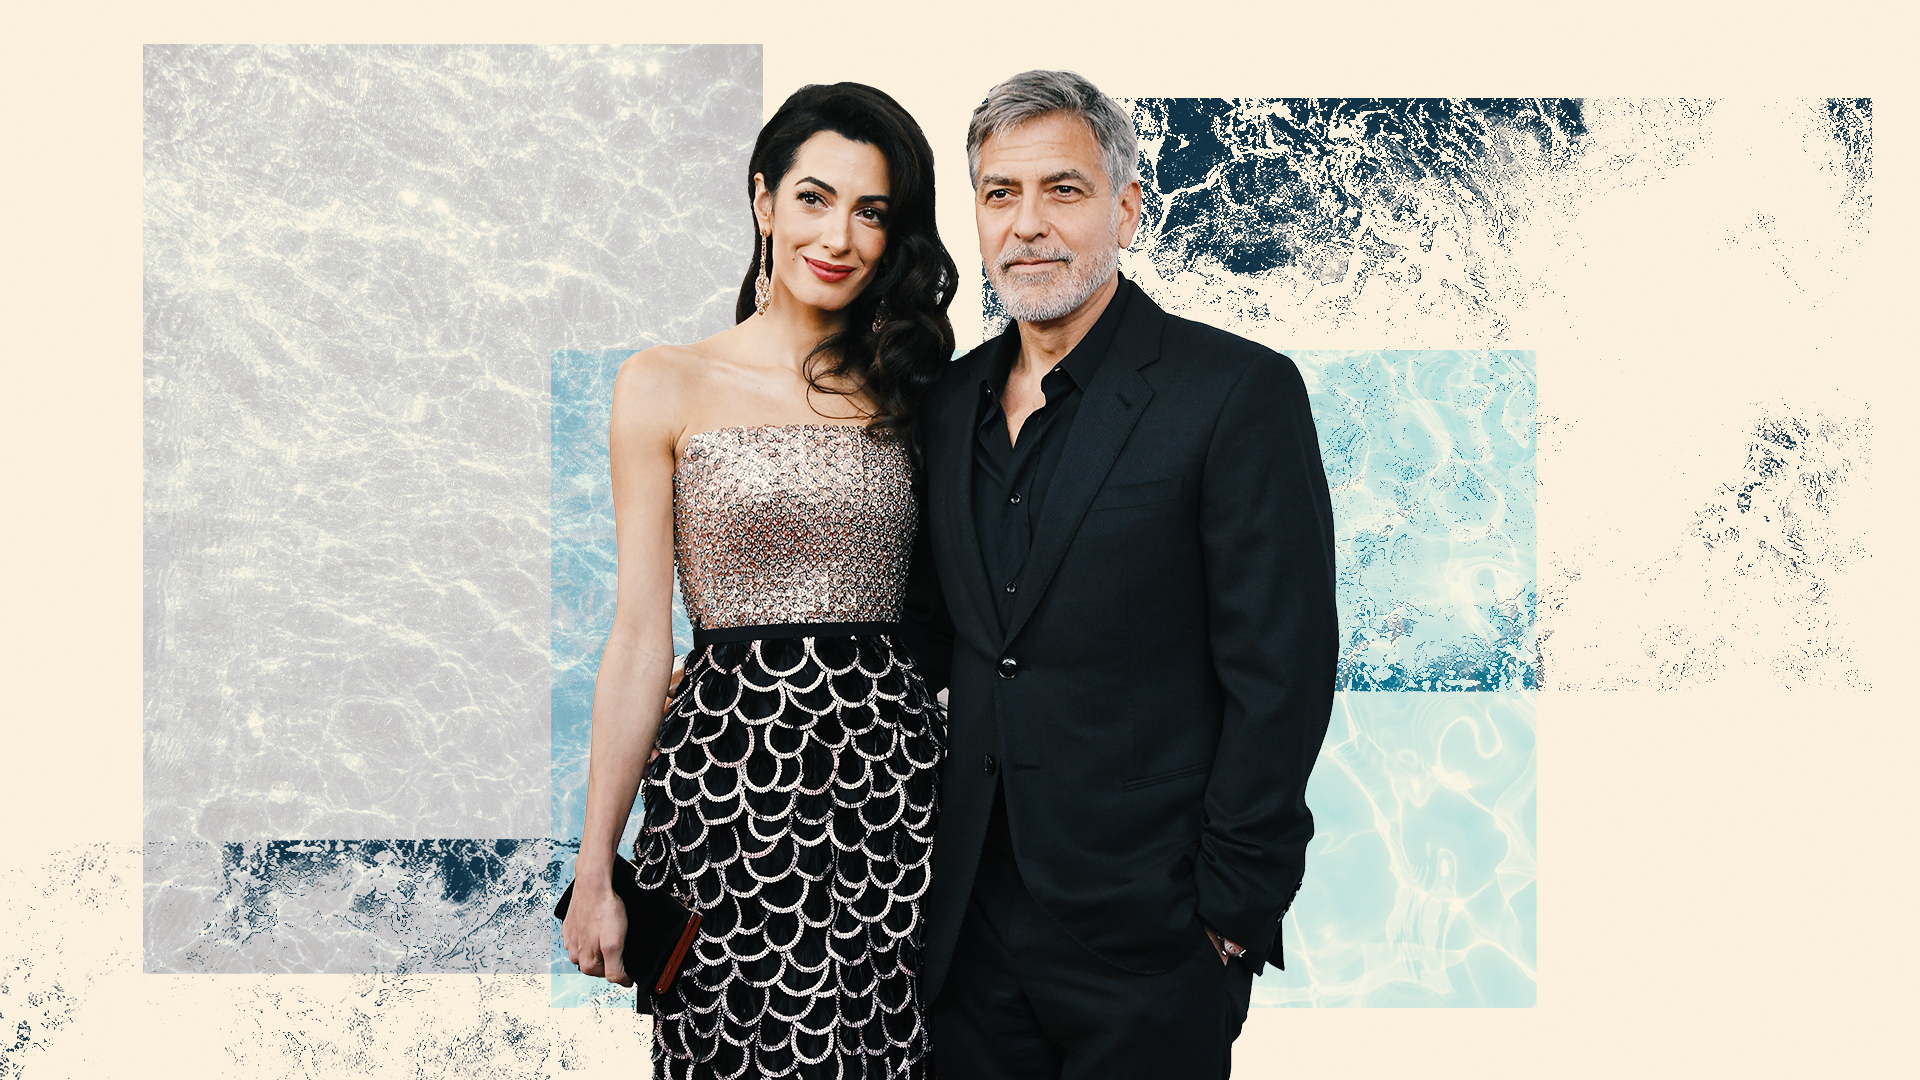 Így változtatta meg a világ leghíresebb agglegényének életét Amal Clooney